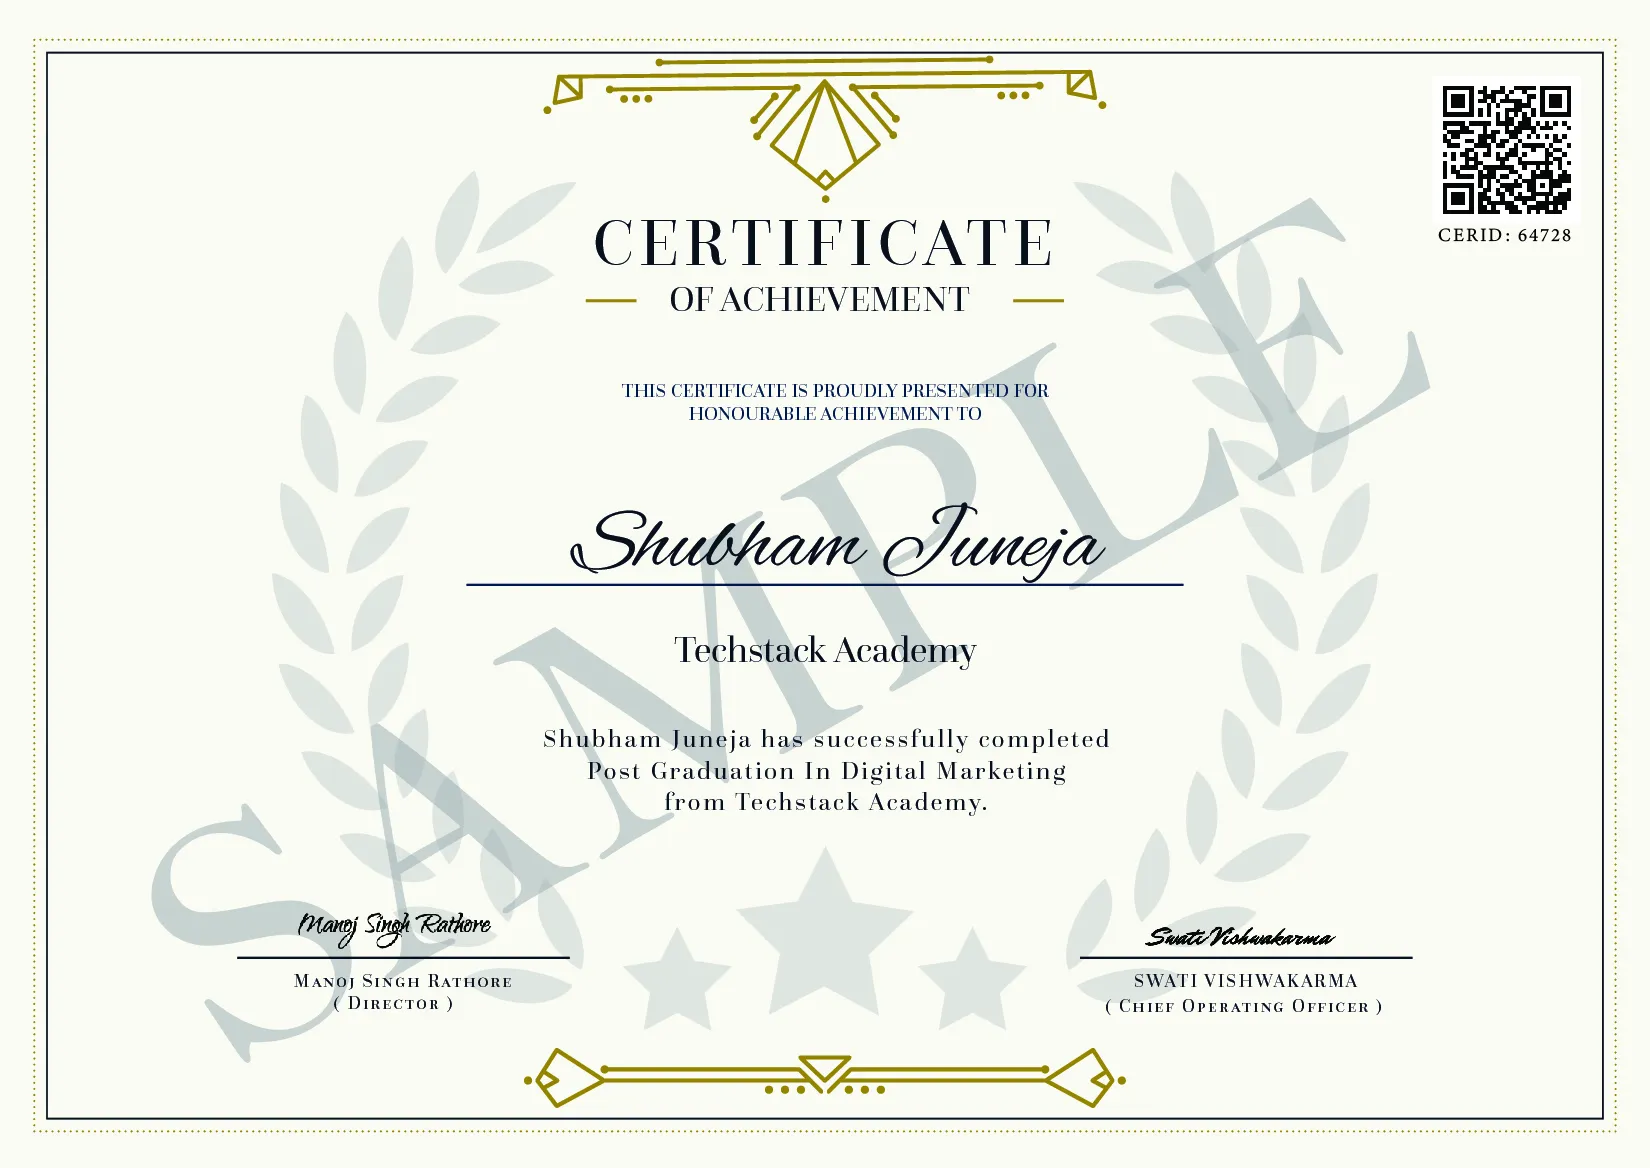 MBA in Digital Marketing Institute Certificate